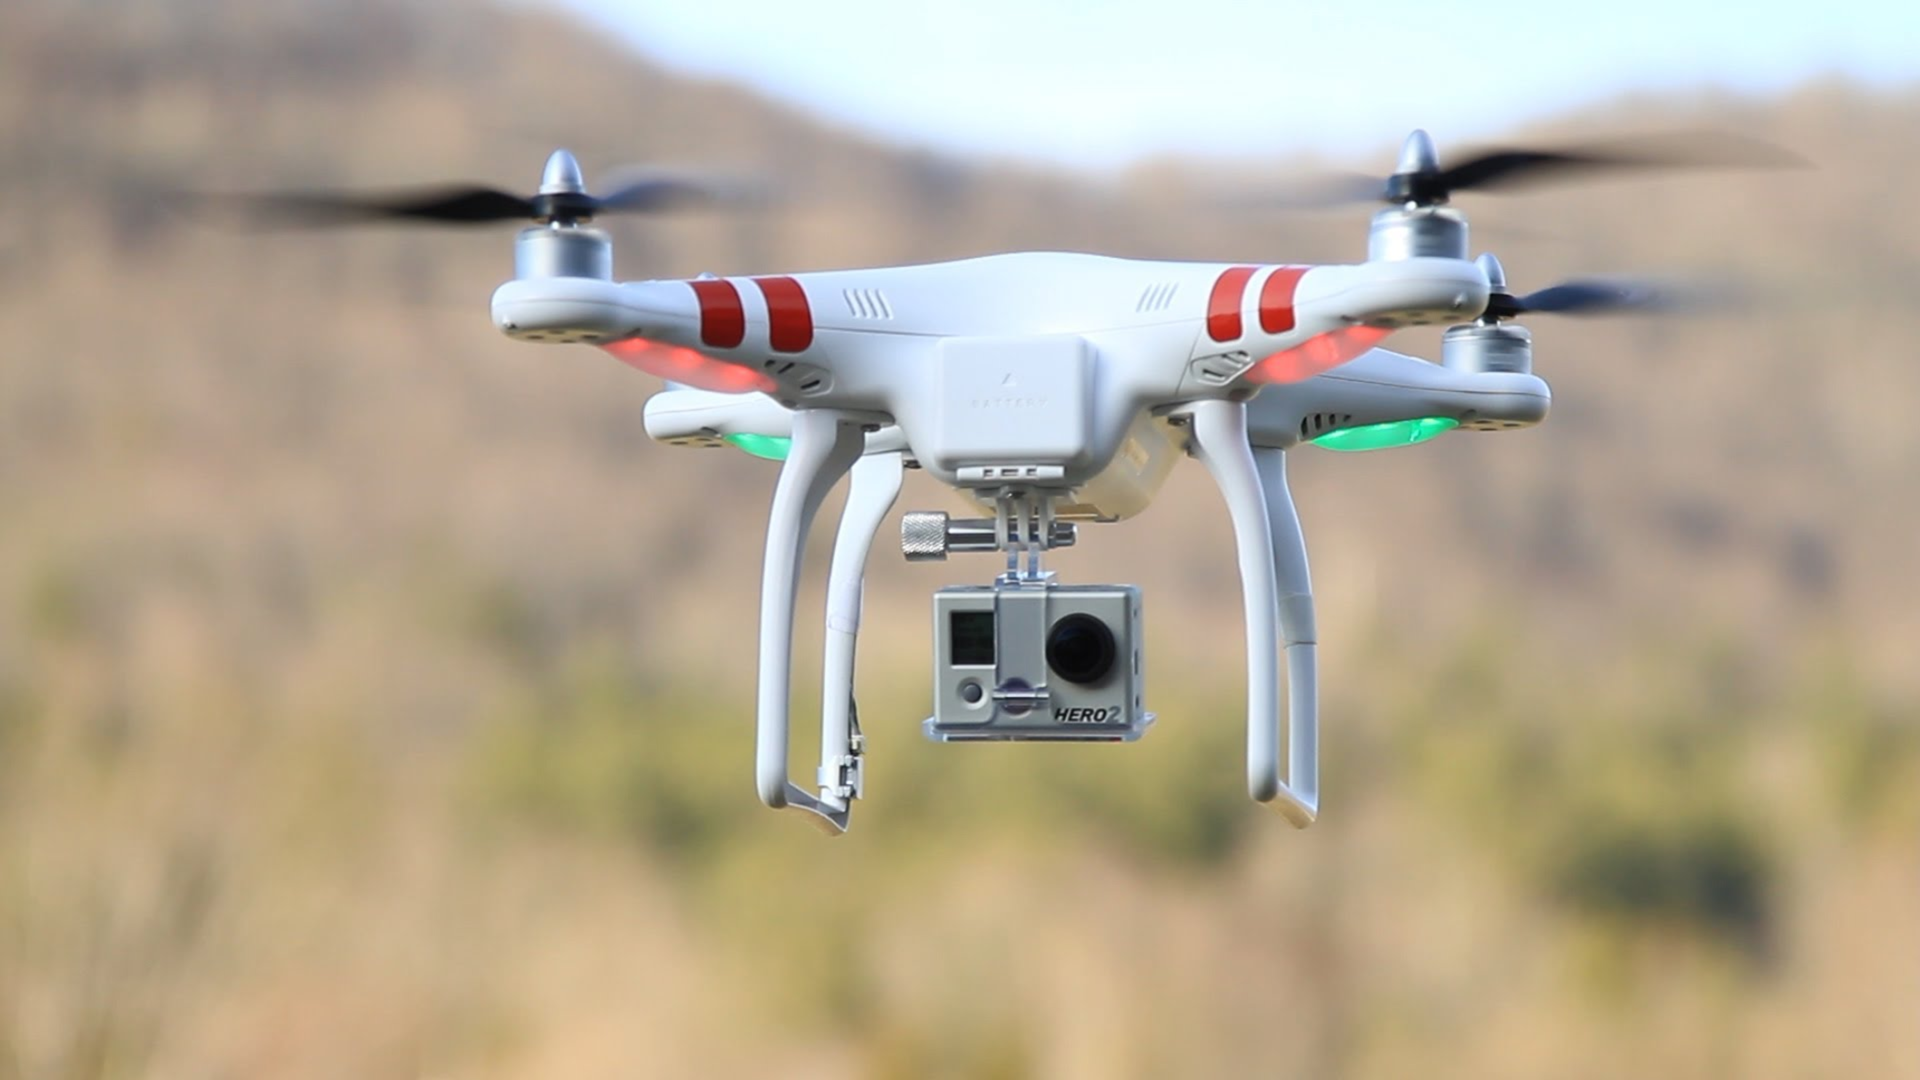 Дрон - беспилотный летательный аппарат, к котором можно крепить фото- или видеокамеру; фото: http://chezasite.com/